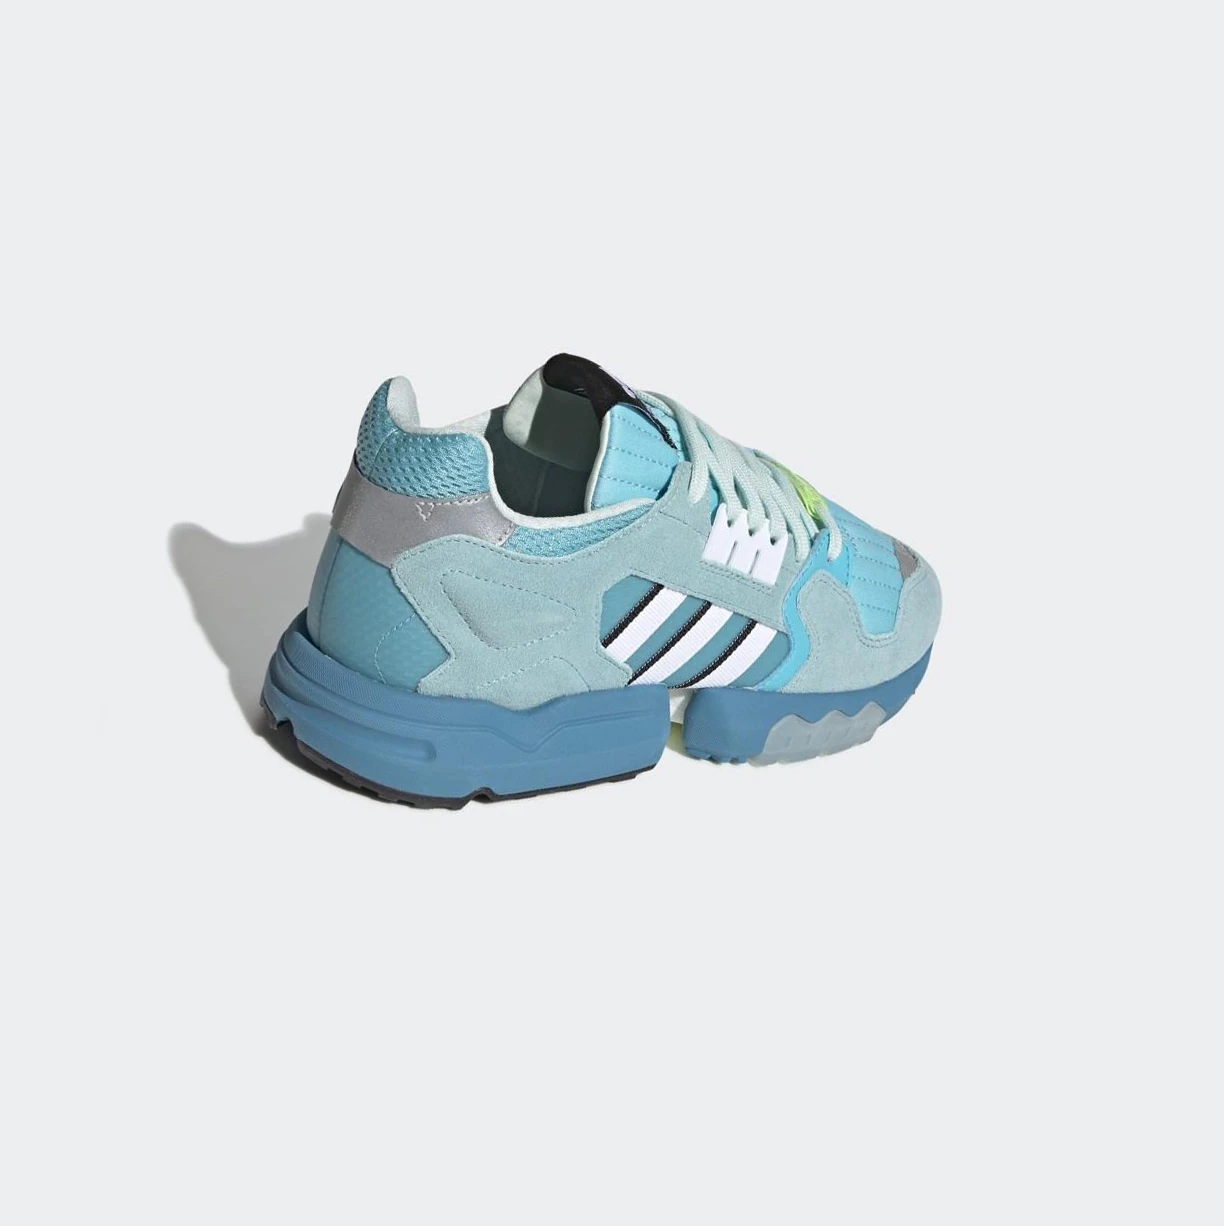 Originálne Topánky Adidas ZX Torsion Damske Modre | 610SKXBQDIN